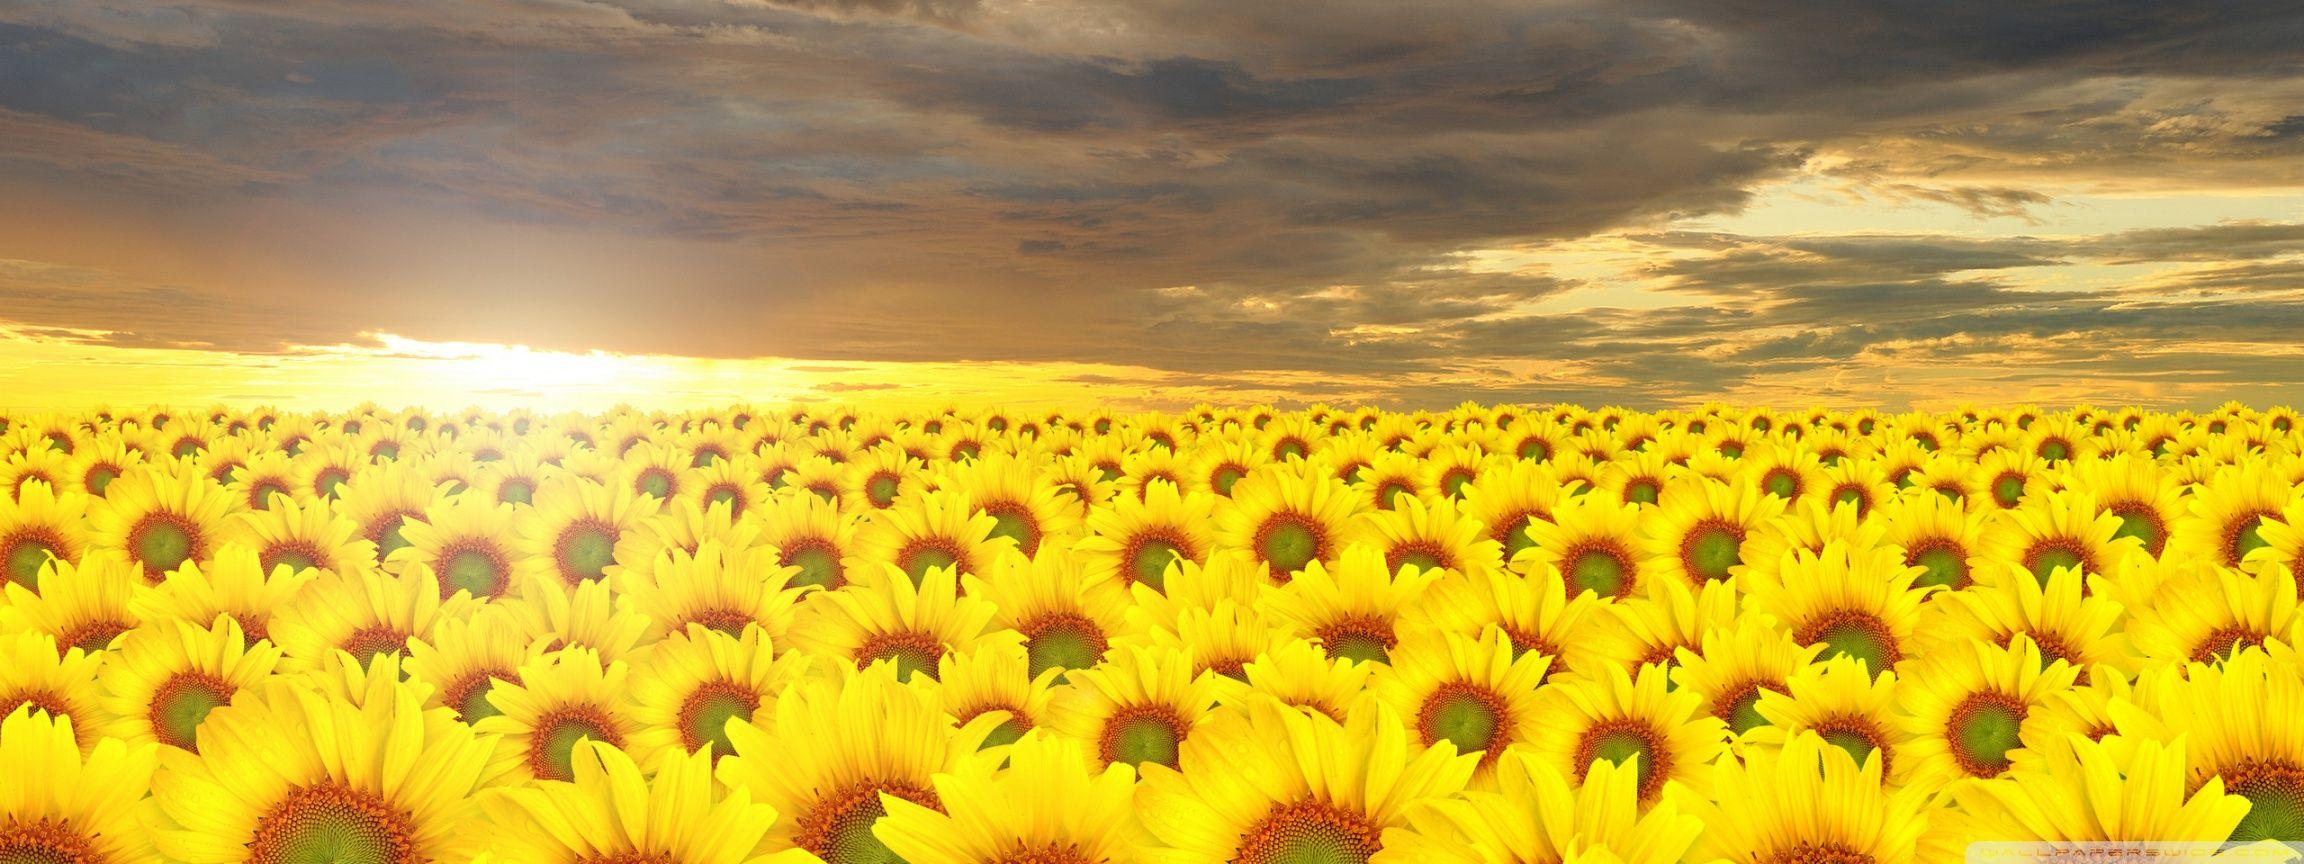 Sunflowers Field ❤ 4K HD Desktop Wallpaper for 4K Ultra HD TV